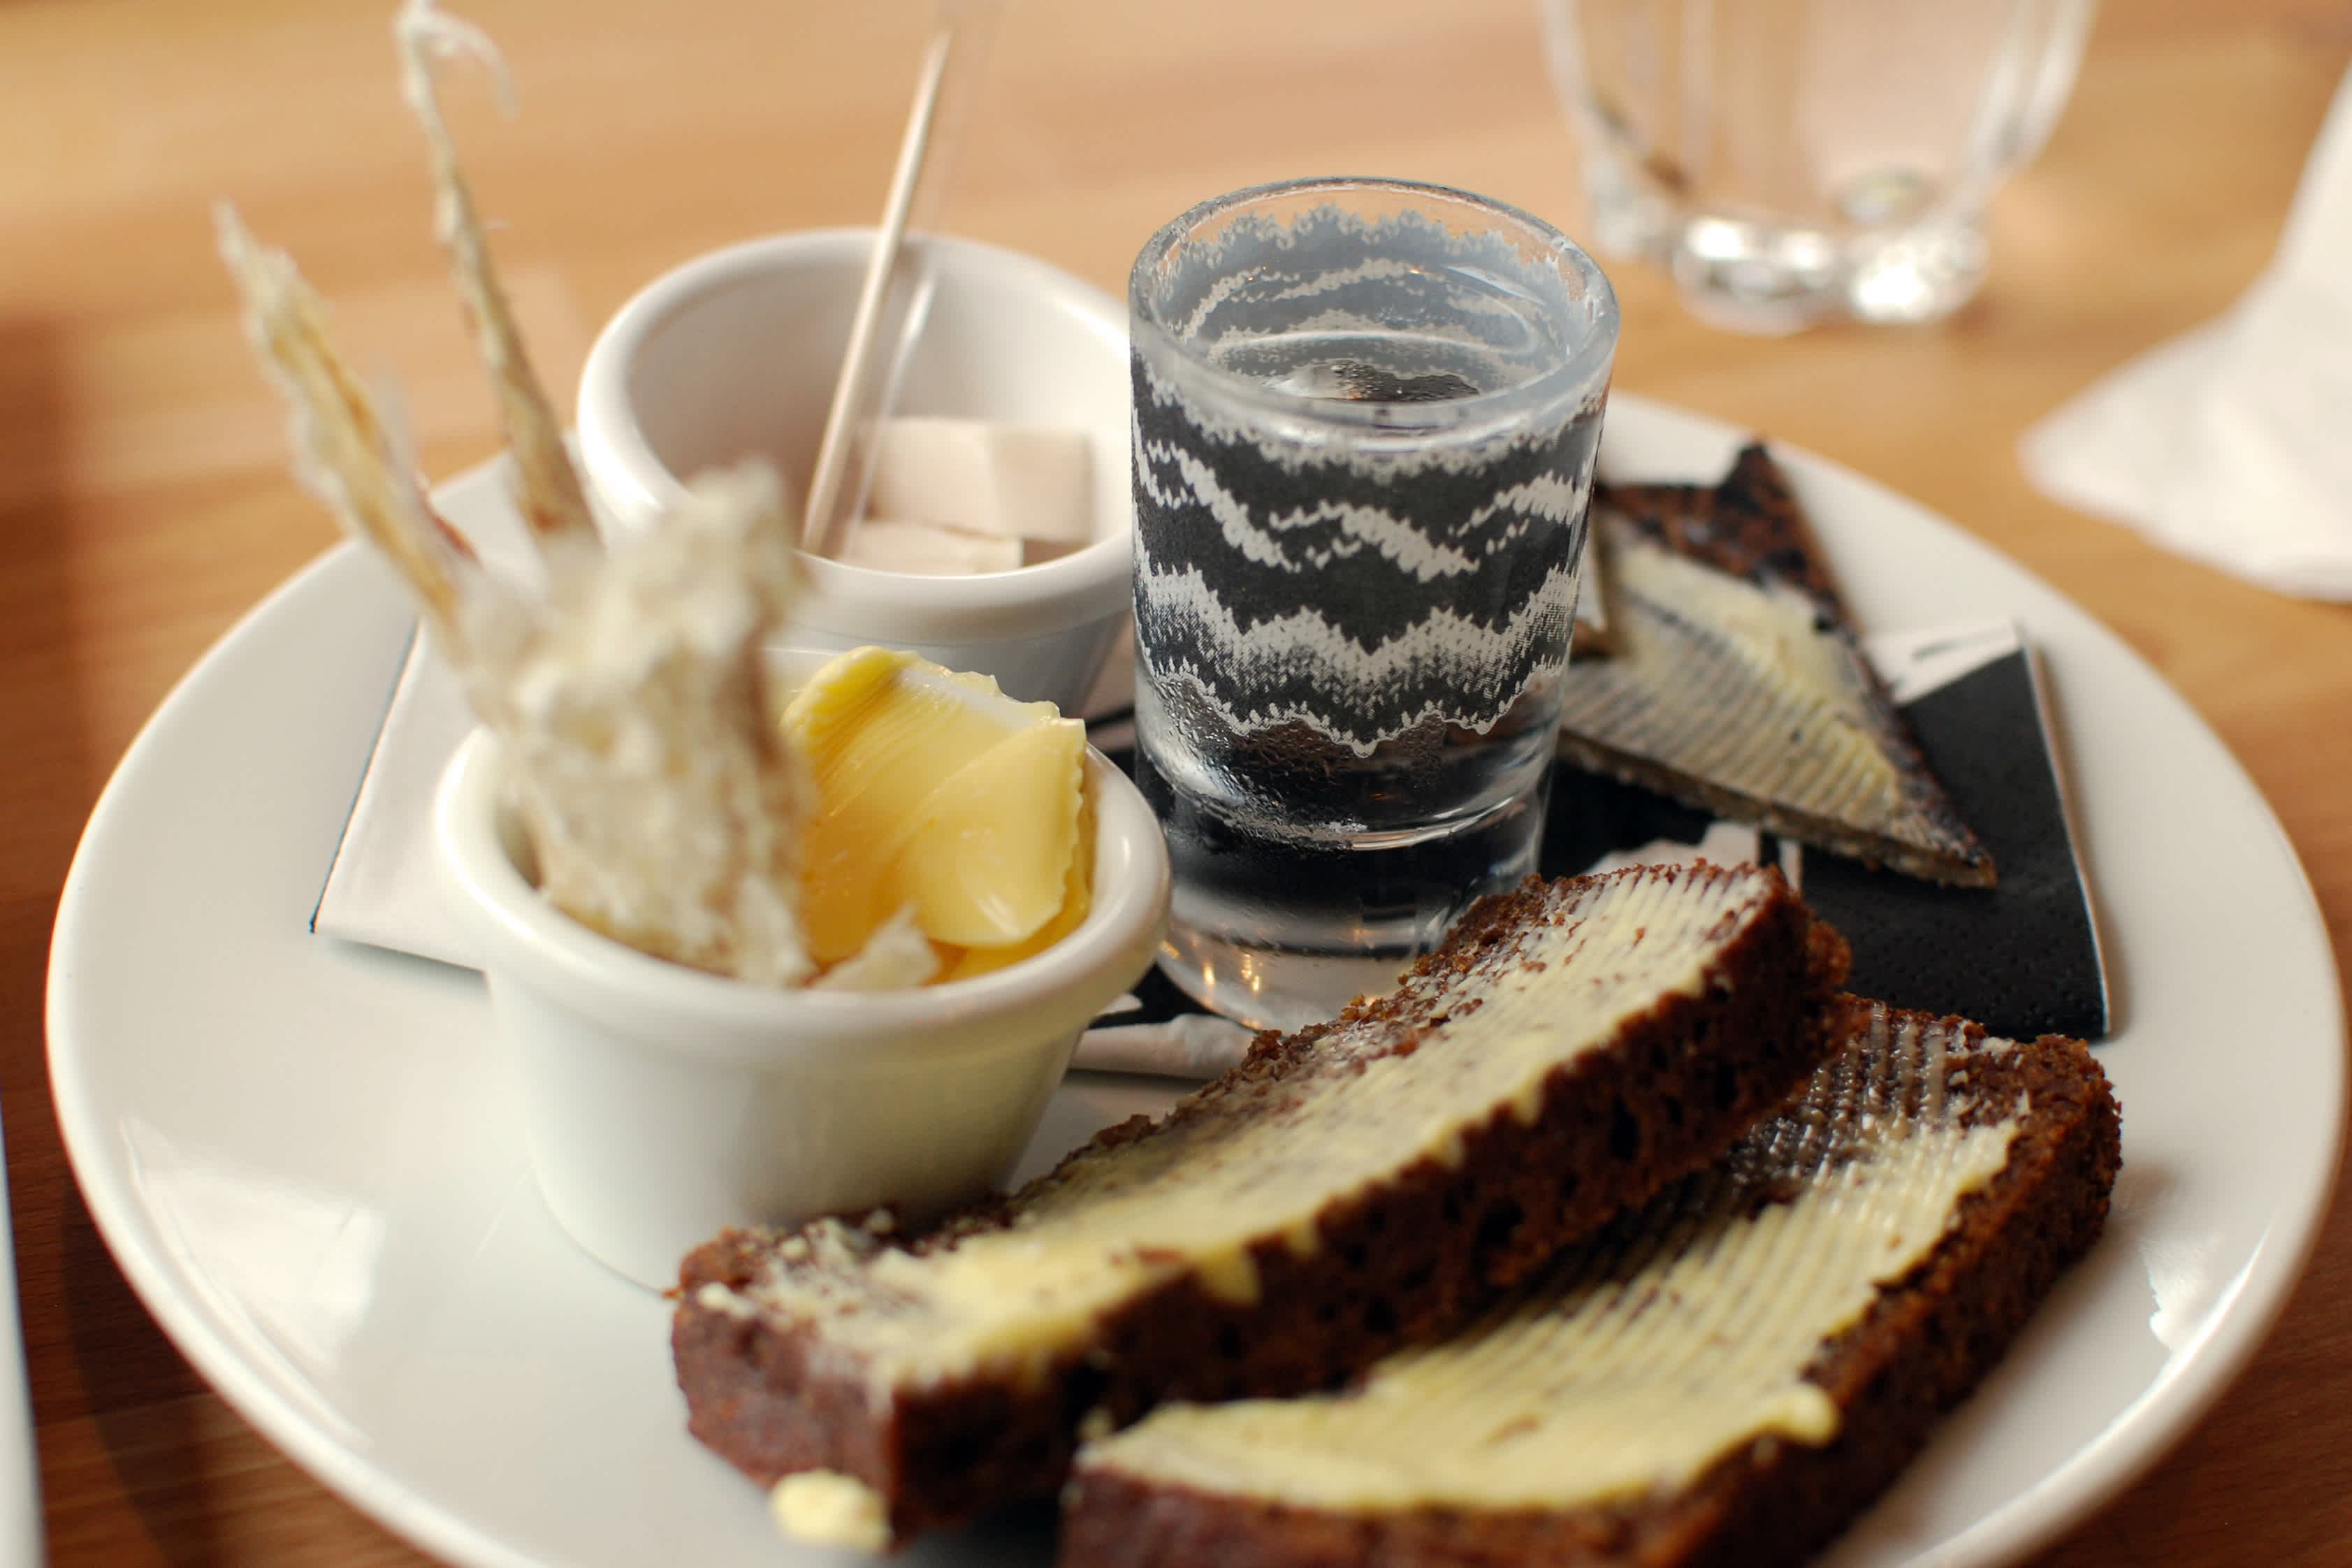 Repas traditionnel islandais avec un pain de seigle au premier plan.